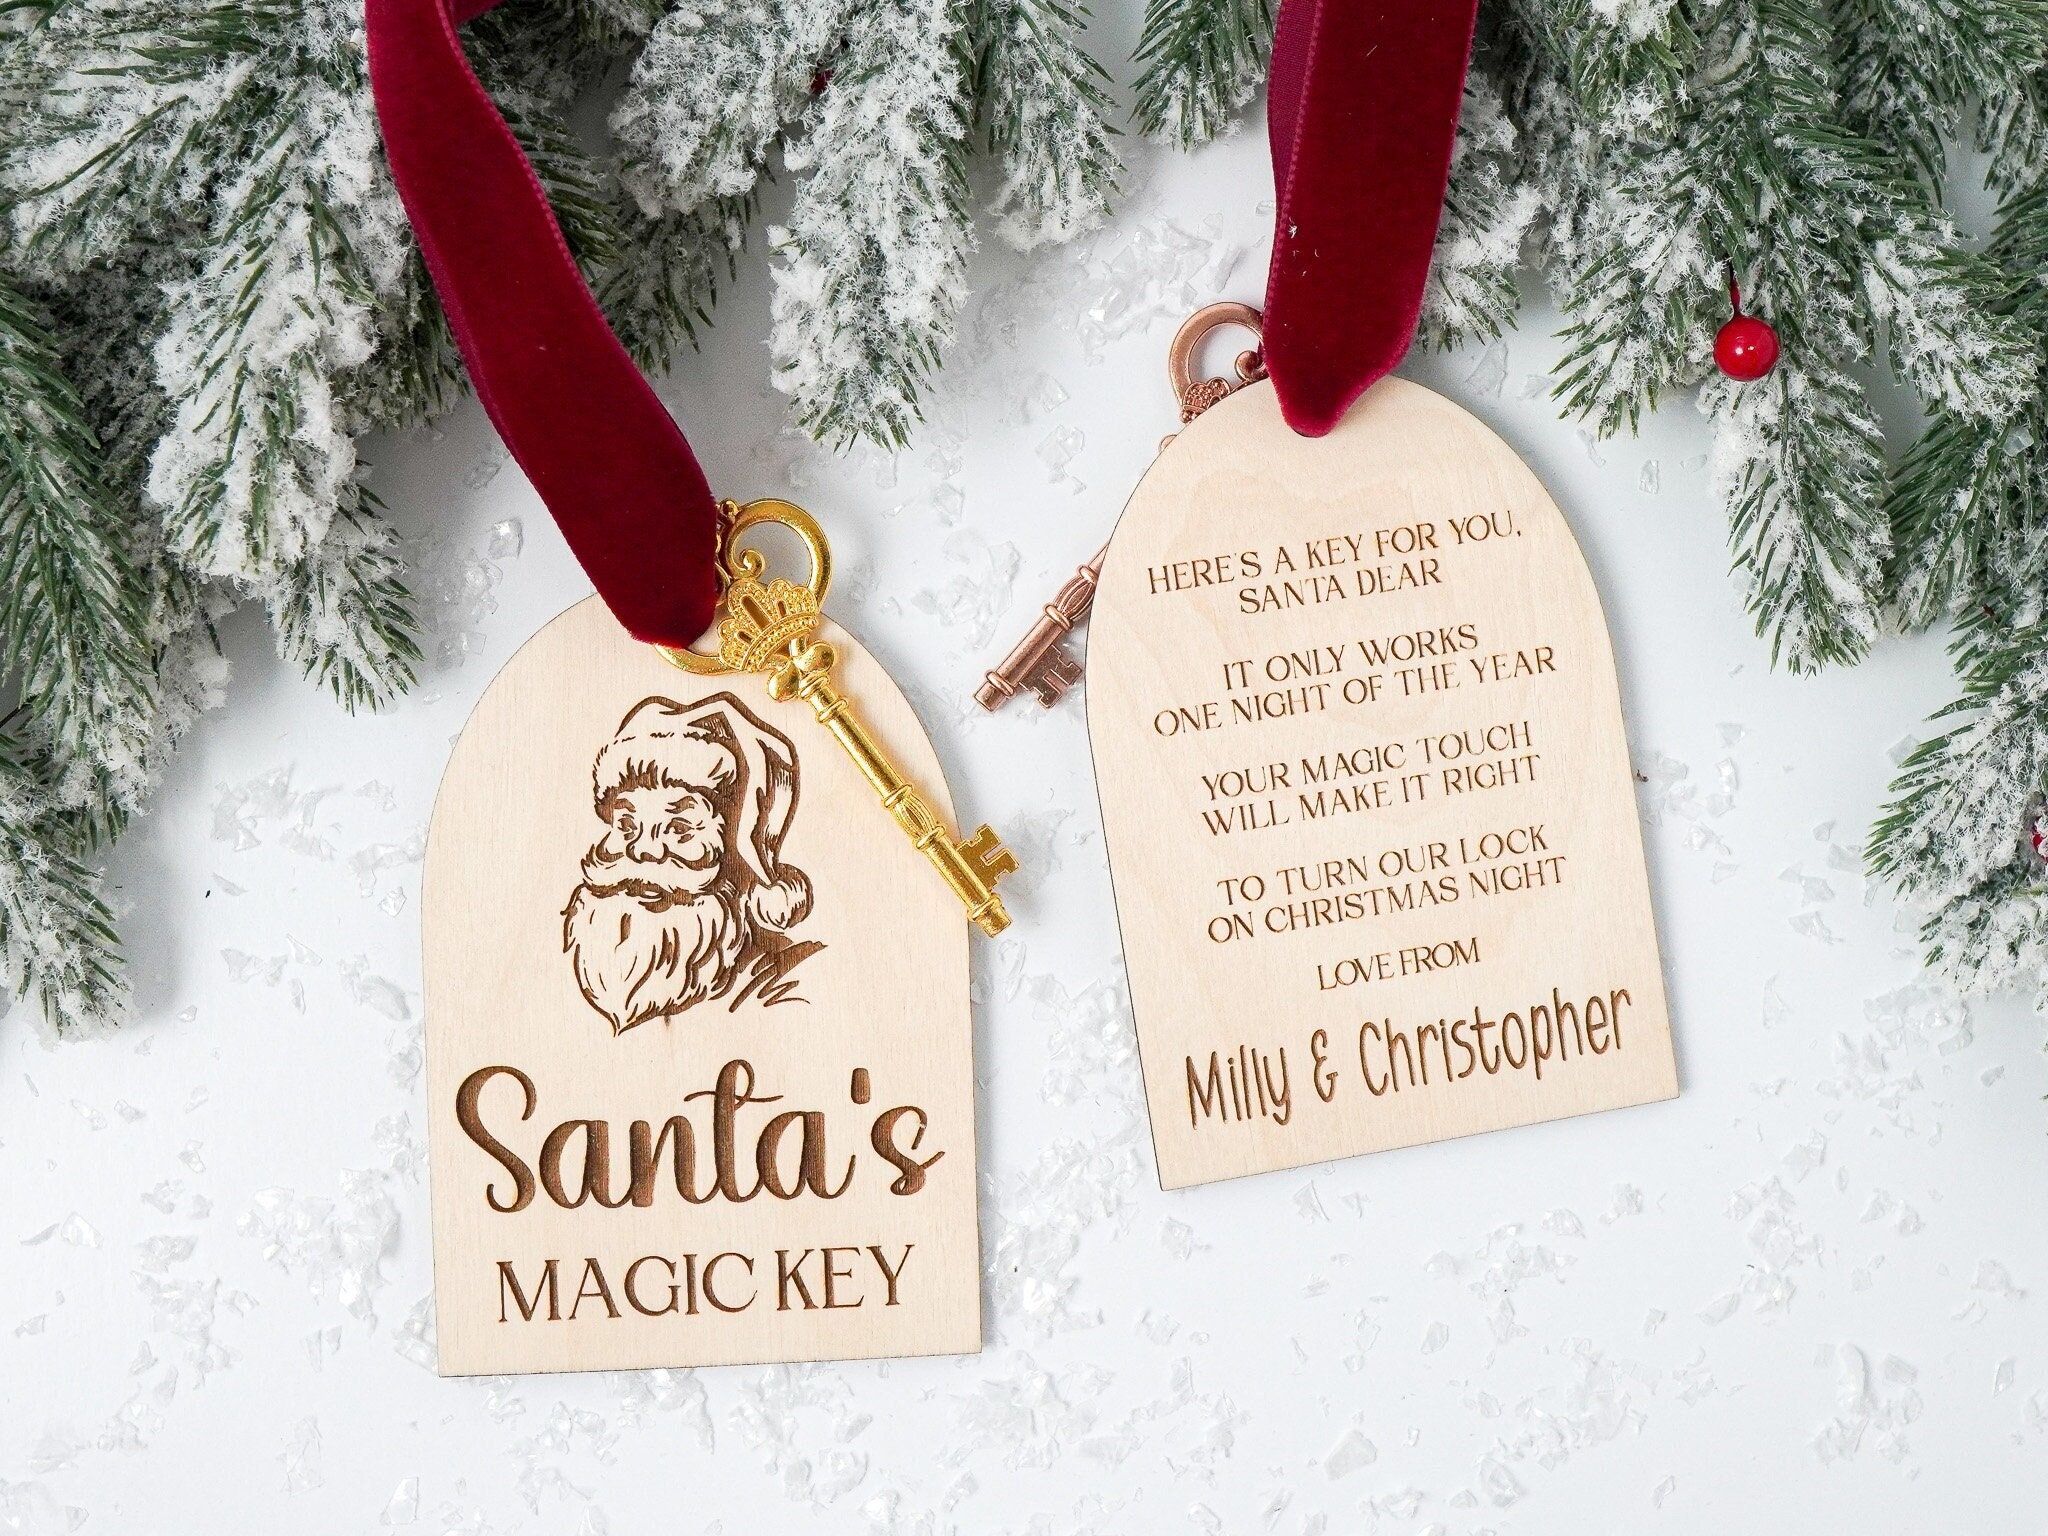 Santa Key Santa Door Key Santa Magic Key Santa Skeleton Key Christmas Gifts  Children No Chimney for Santa 